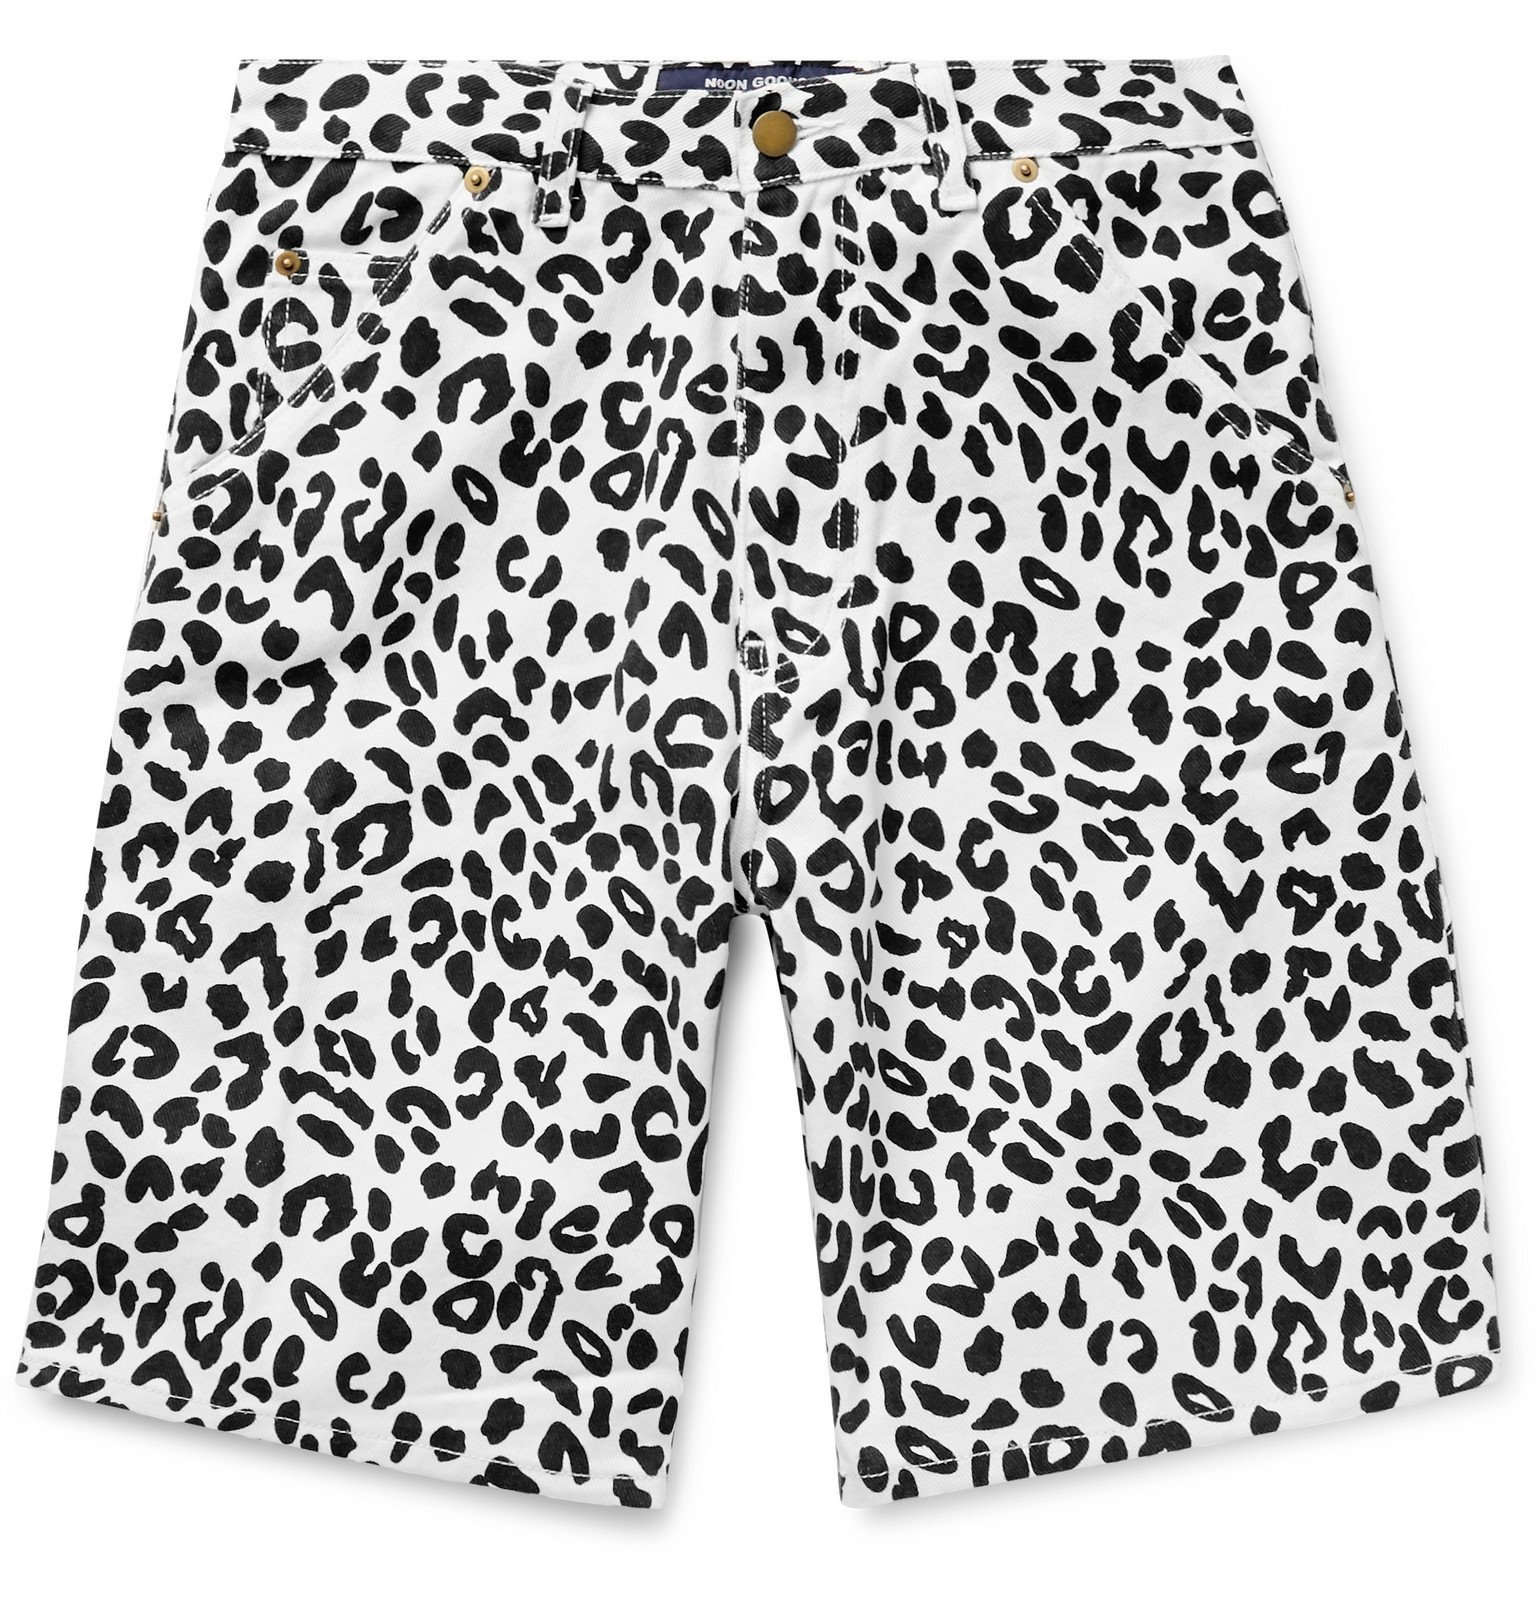 leopard print jean shorts